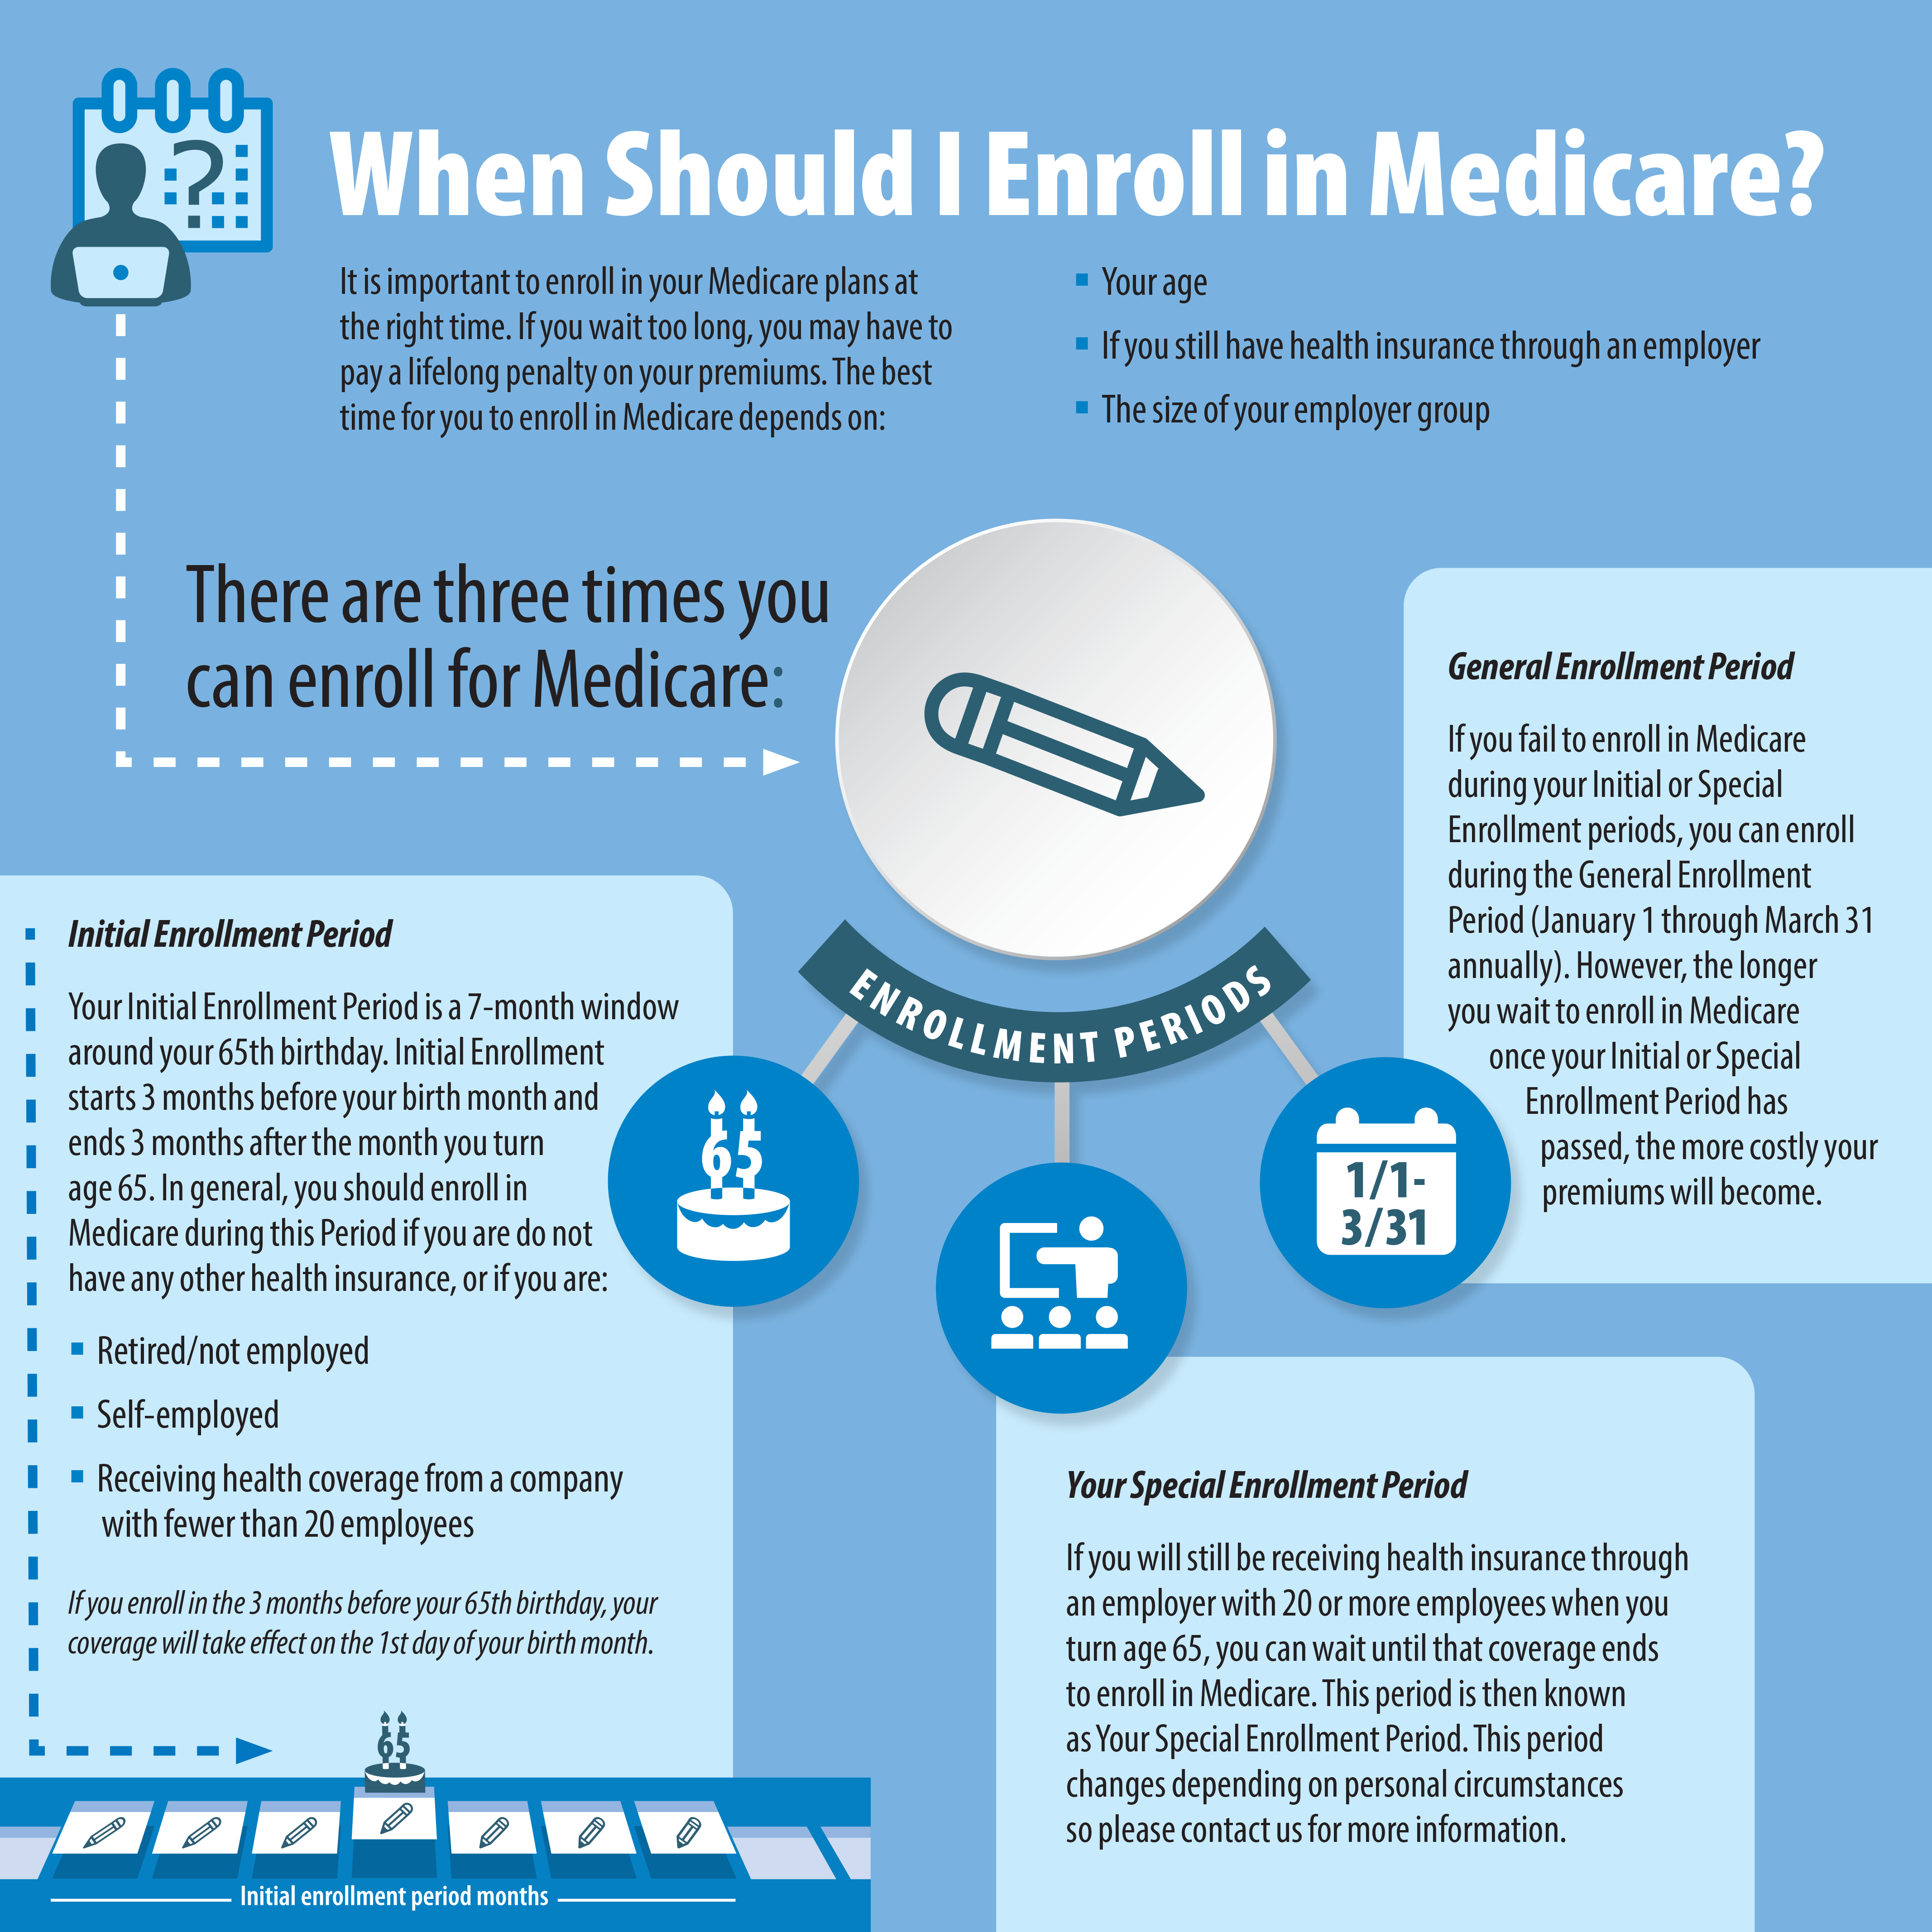 When should I enroll in Medicare?